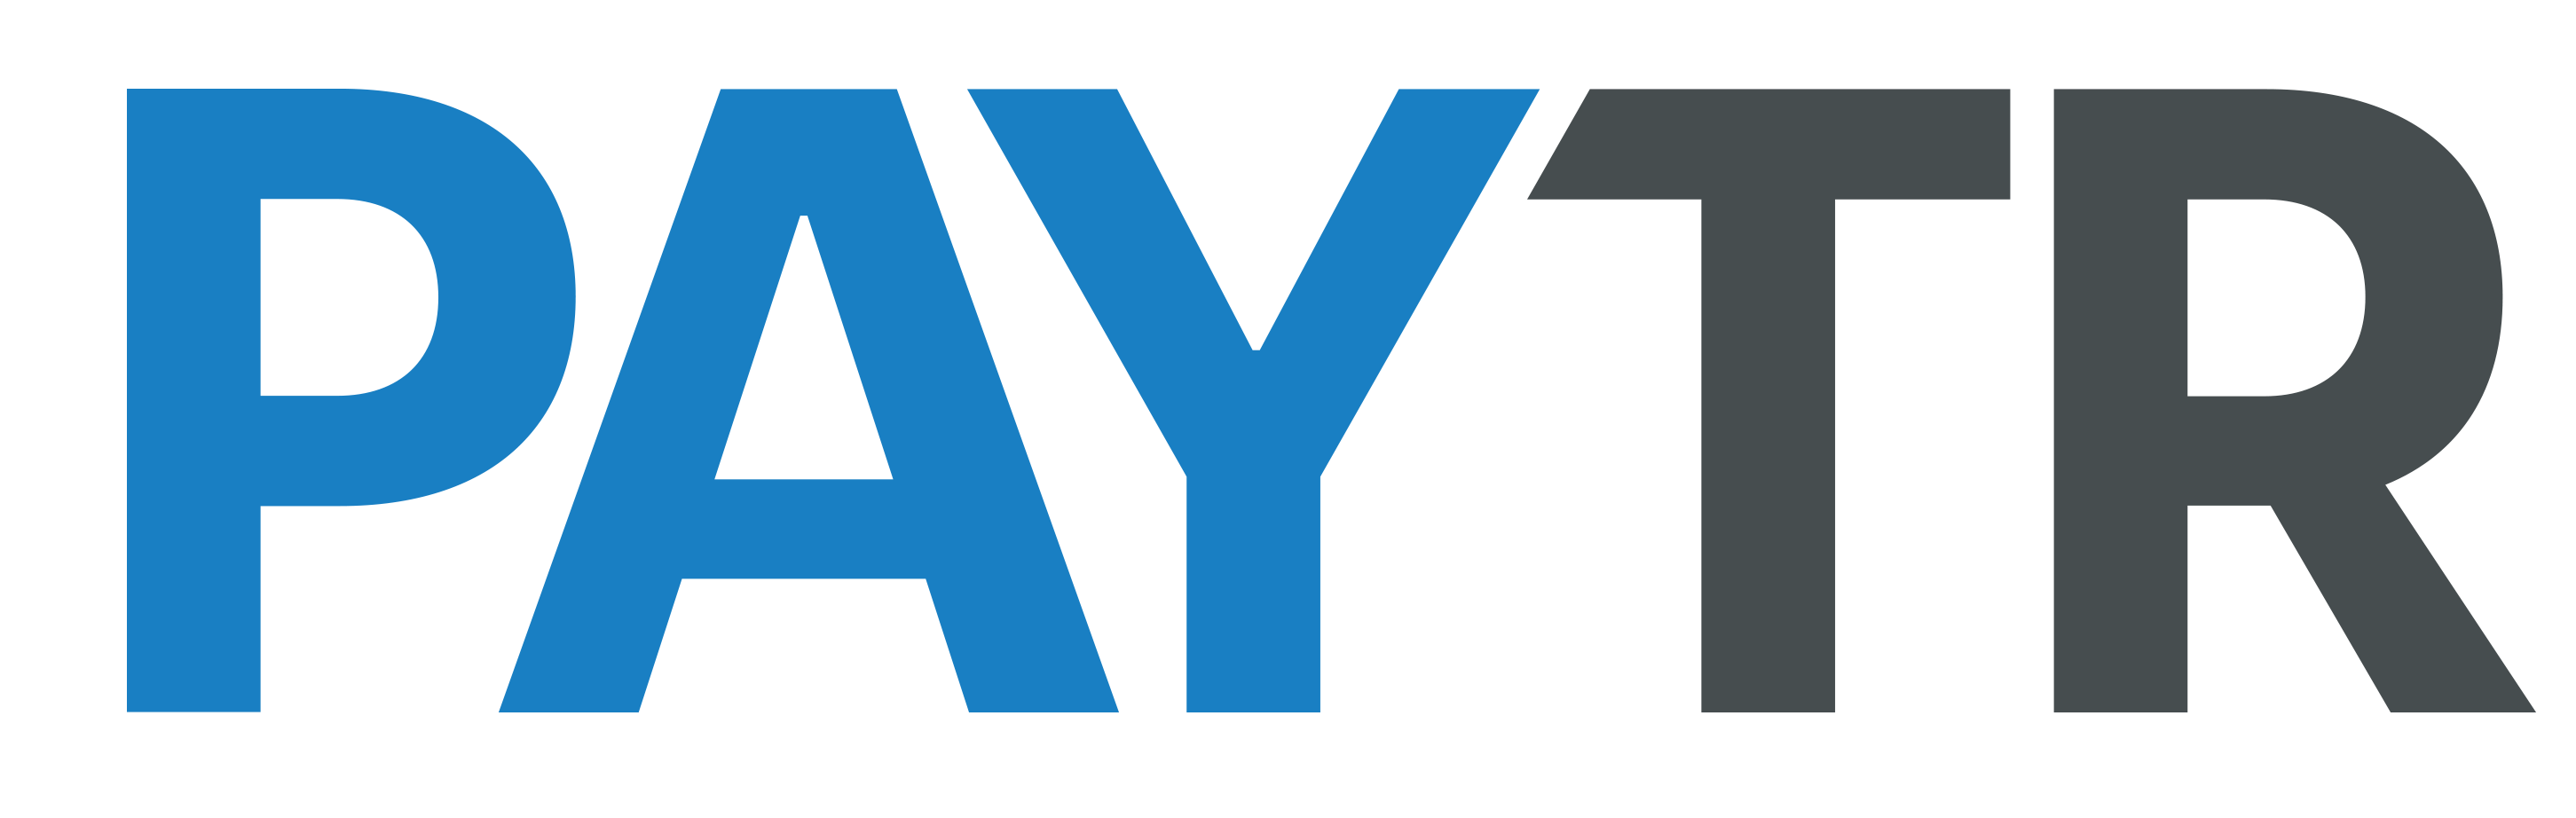 paytr-logo